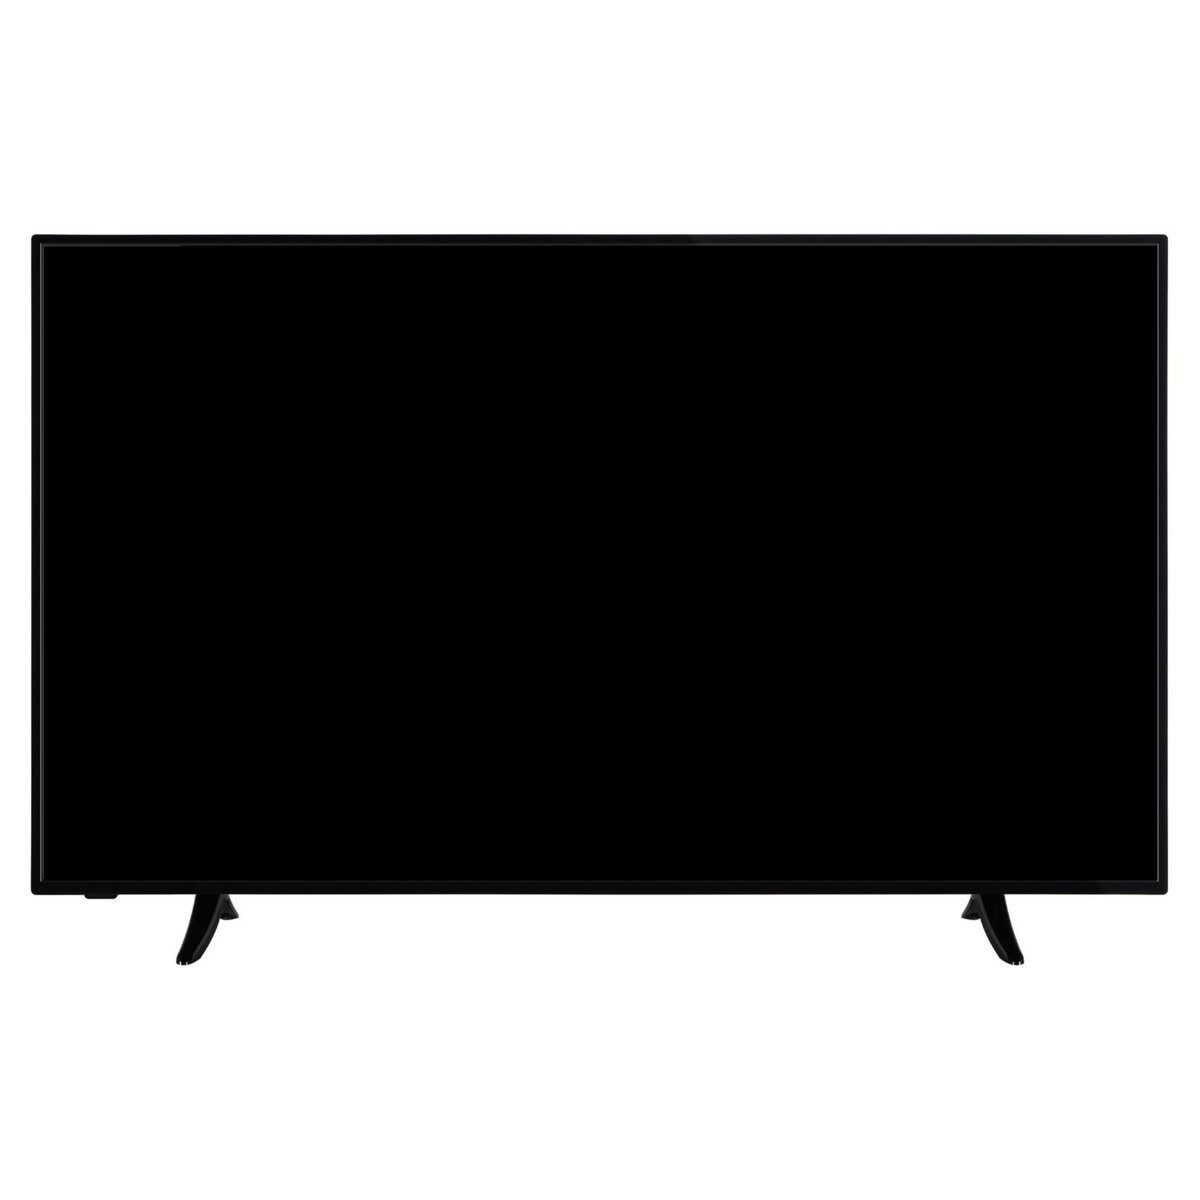 SELECLINE 50S201 TV LED 4K UHD 126 cm Smart TV 